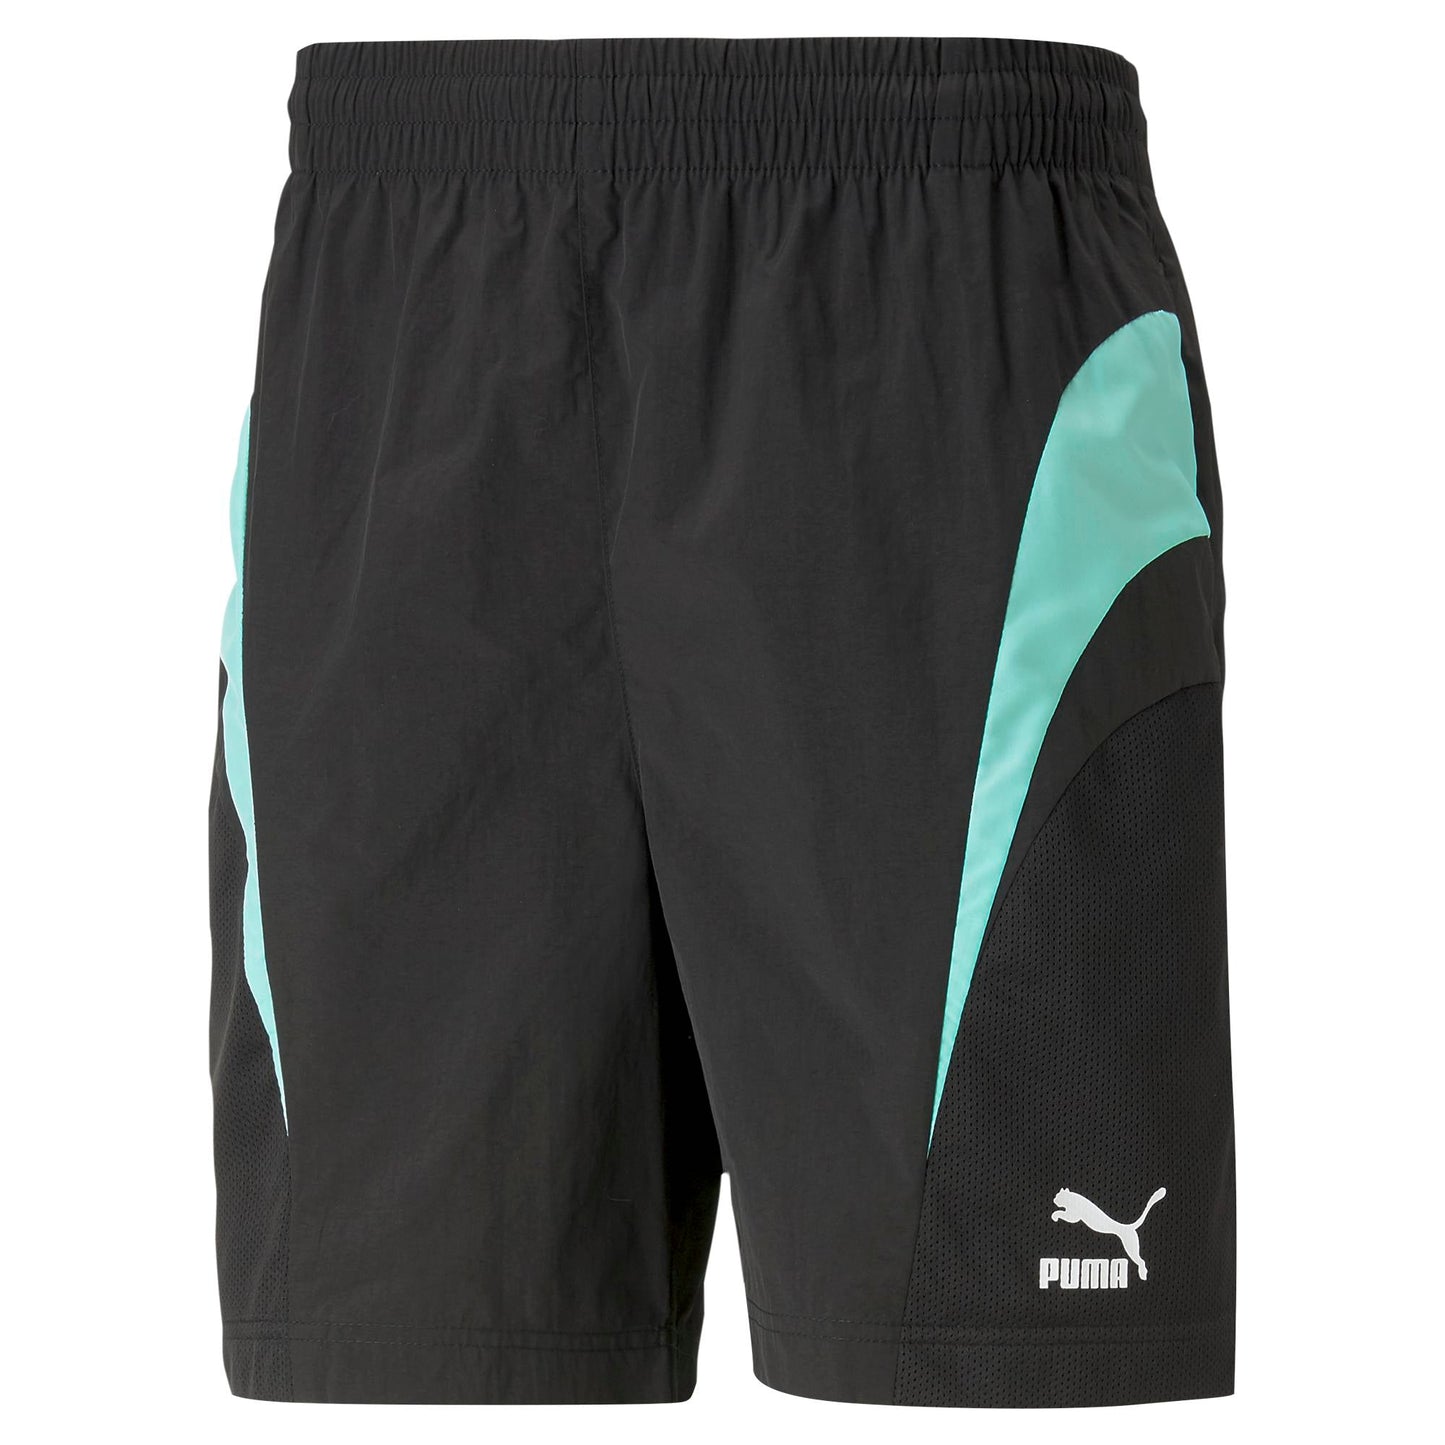 Swxp Shorts 7" Wv Sportstyle/Prime Men